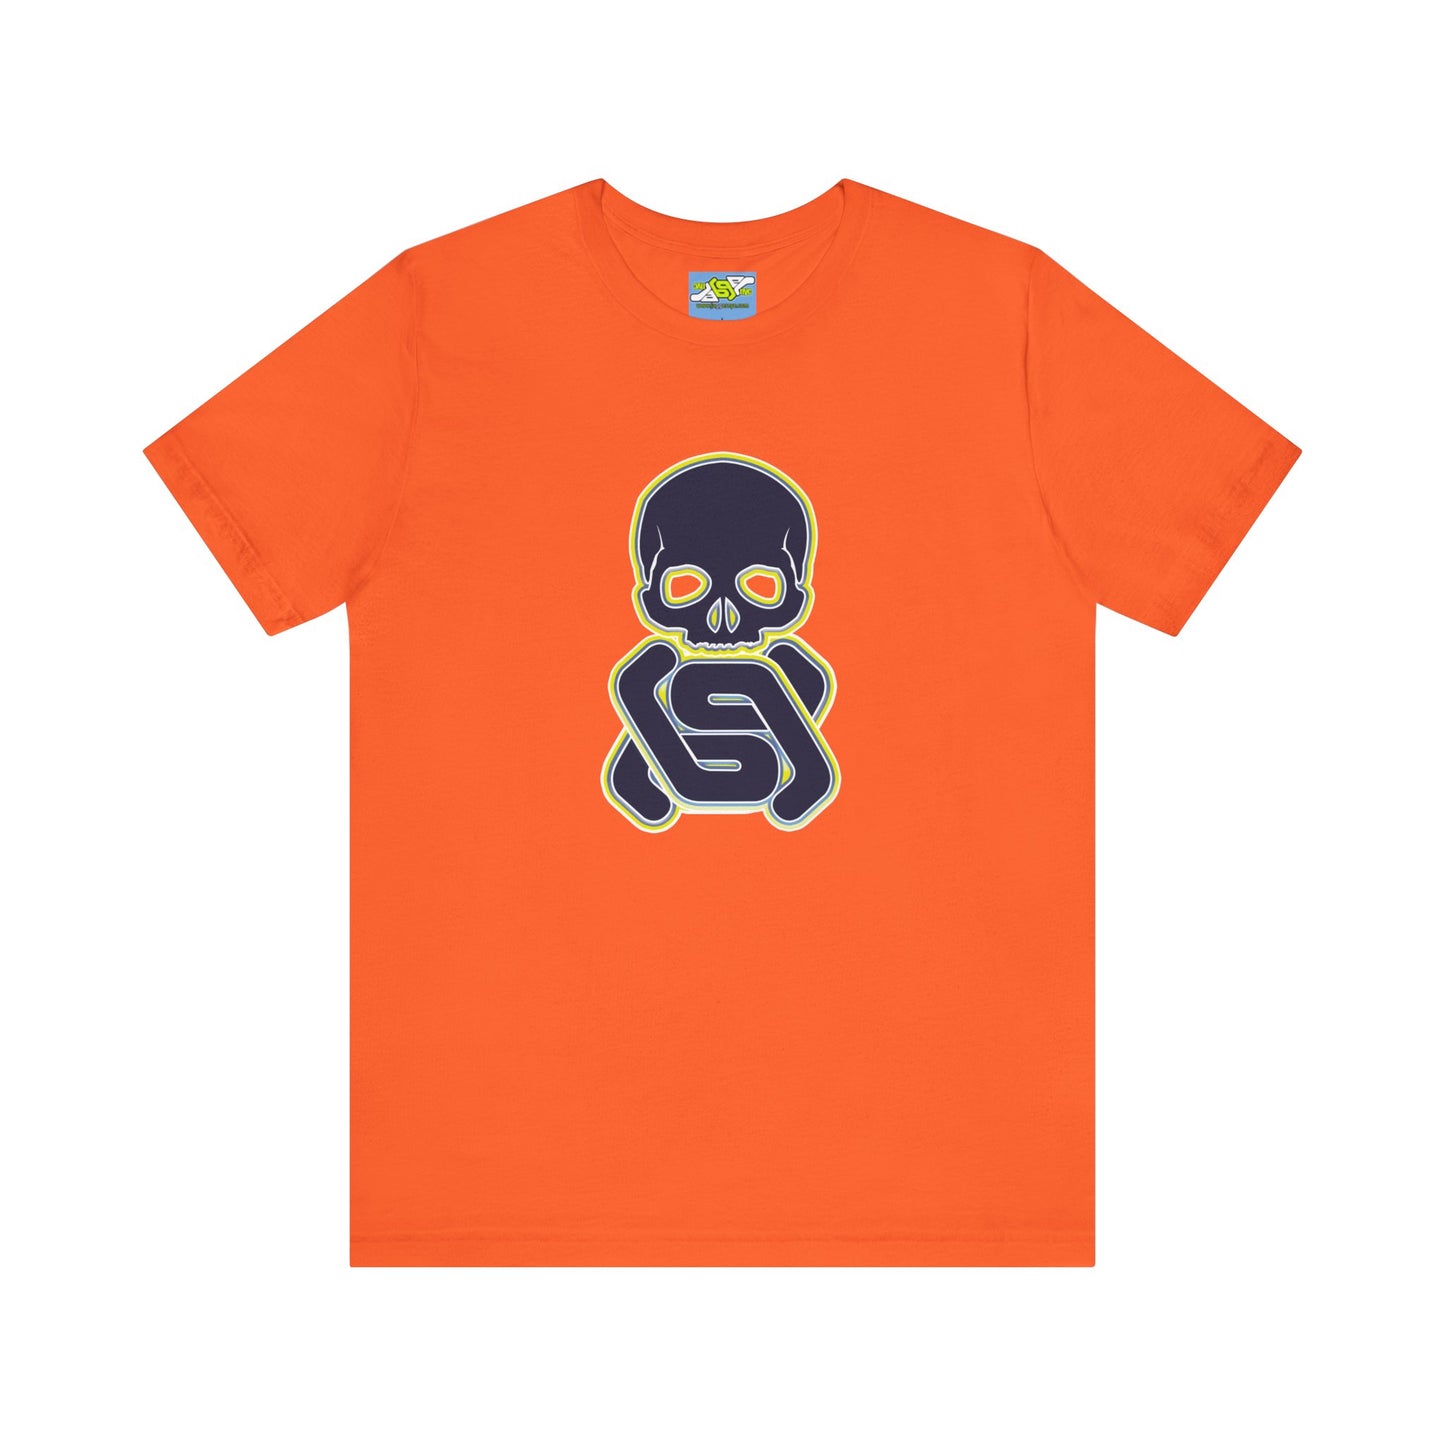 Navy Skull & GG Crossbones, Yellow outline, Orange Shirt